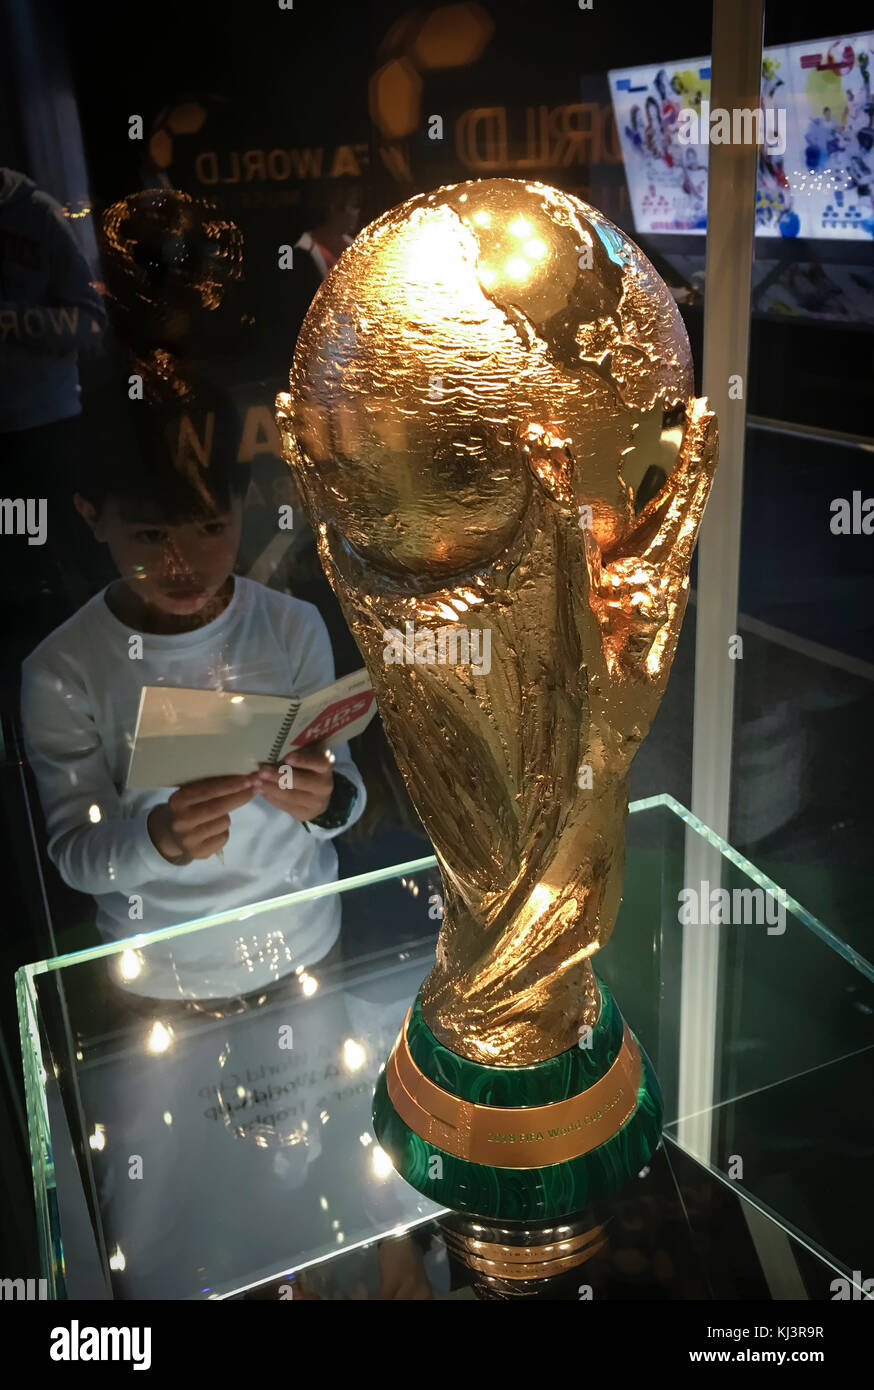 Zurigo, Svizzera-12 Nov 2017: Un ragazzino sta guardando la Coppa del Mondo FIFA esposta presso il FIFA World Football Museum di Zurigo, Svizzera Foto Stock